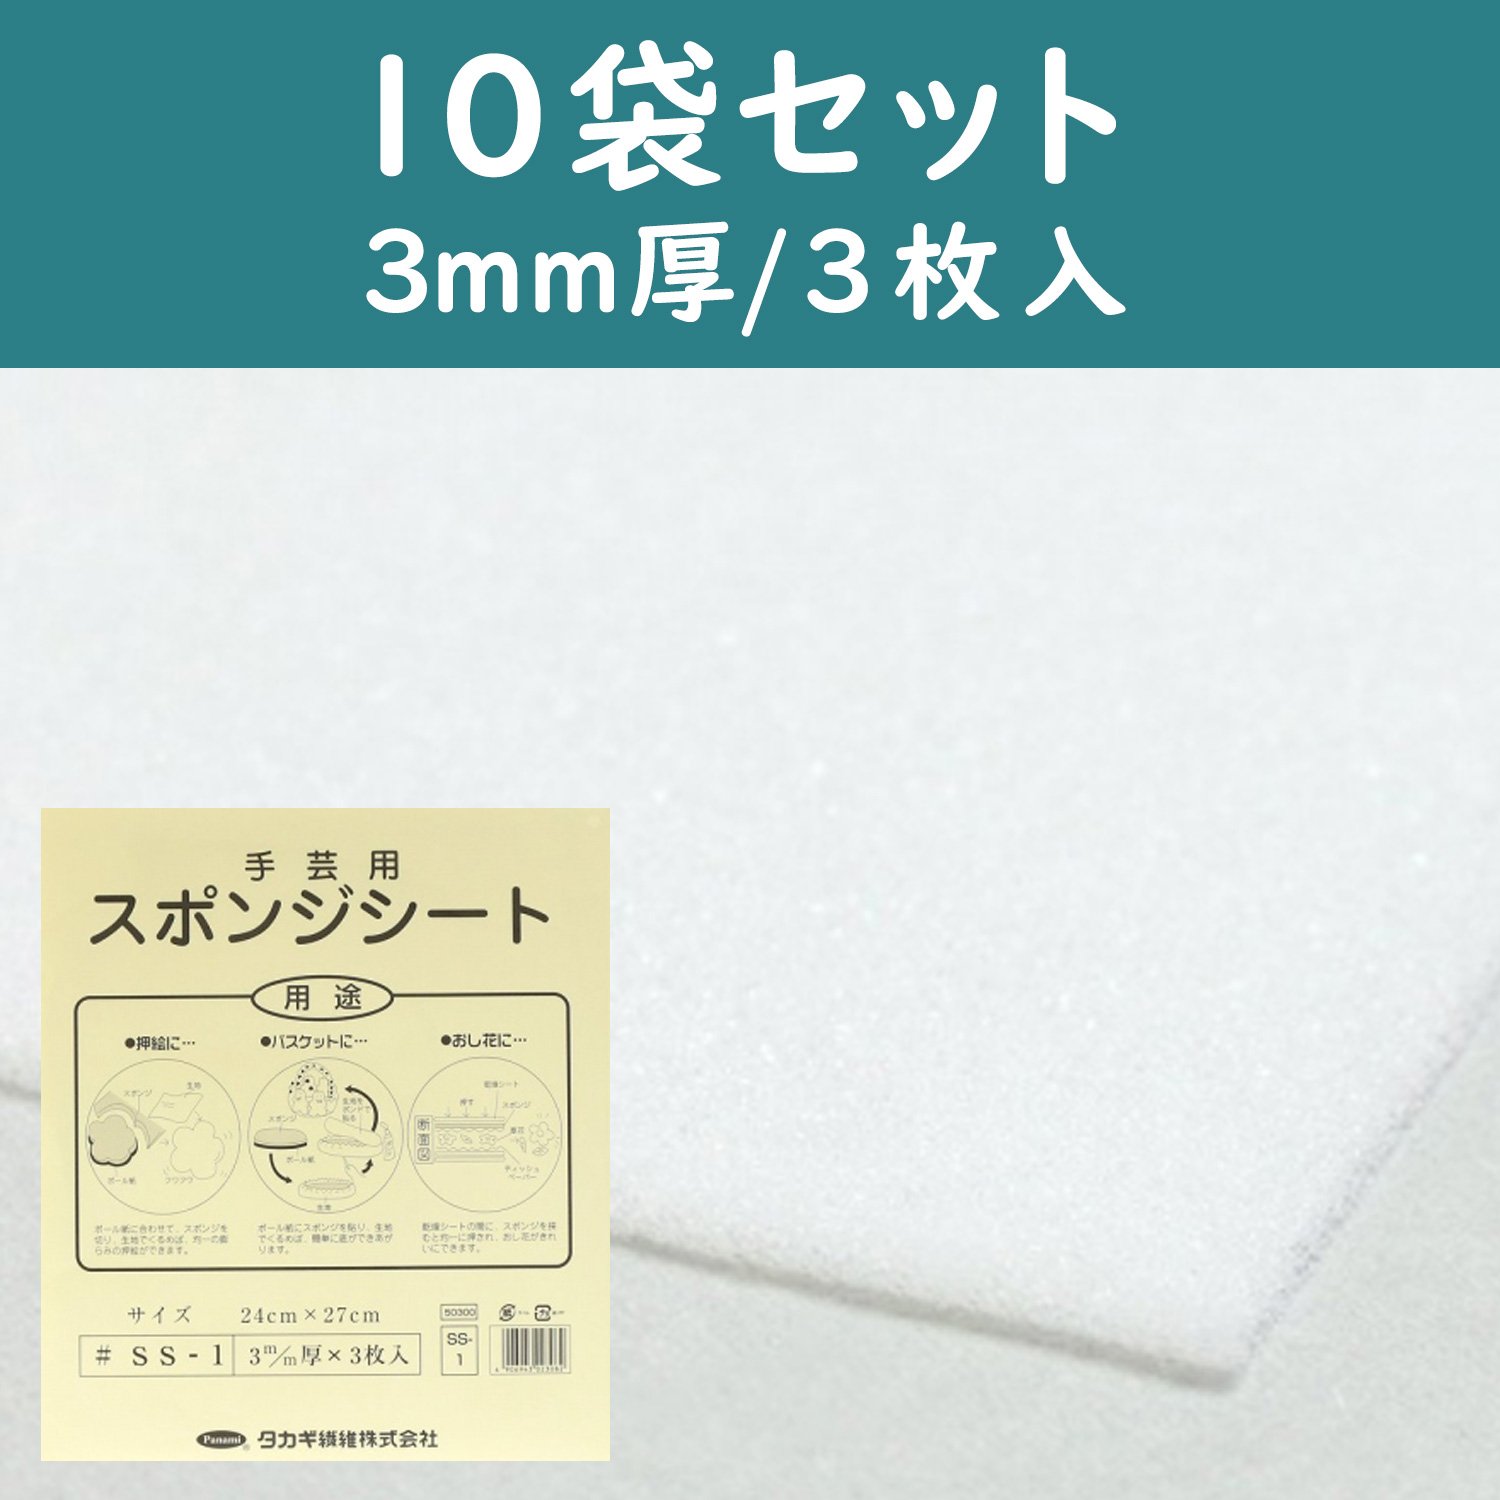 【1/16まで】PAN-SS1-10 手芸用スポンジシート 3mm厚 24×27cm 3枚入×10袋セット (セット)